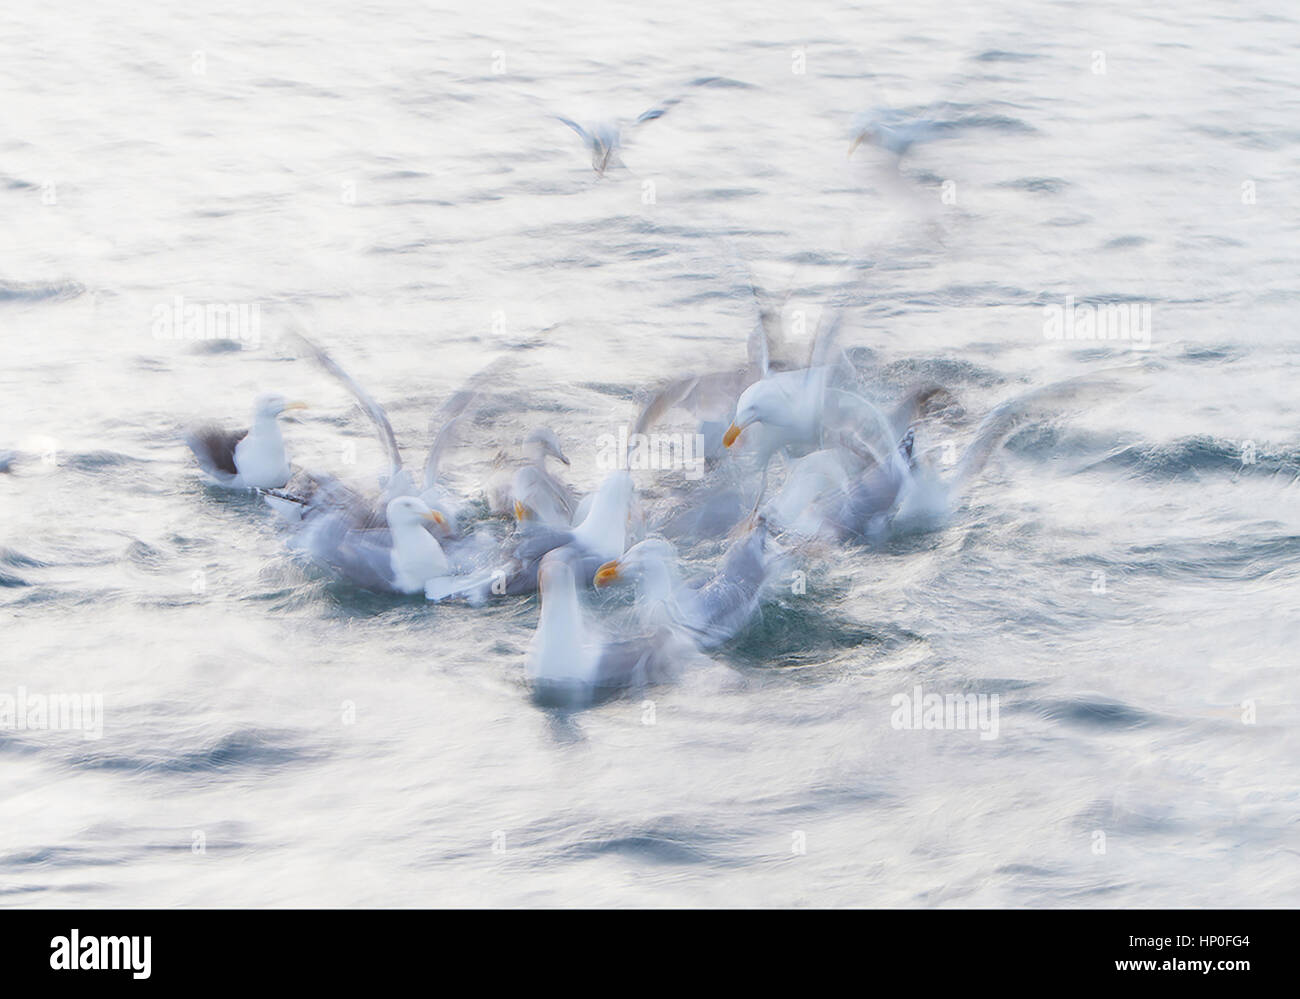 Velocidad de obturación lenta toma de un grupo de gaviotas (Larus argentatus) buceo y luchan por la comida sobre la superficie del mar Foto de stock